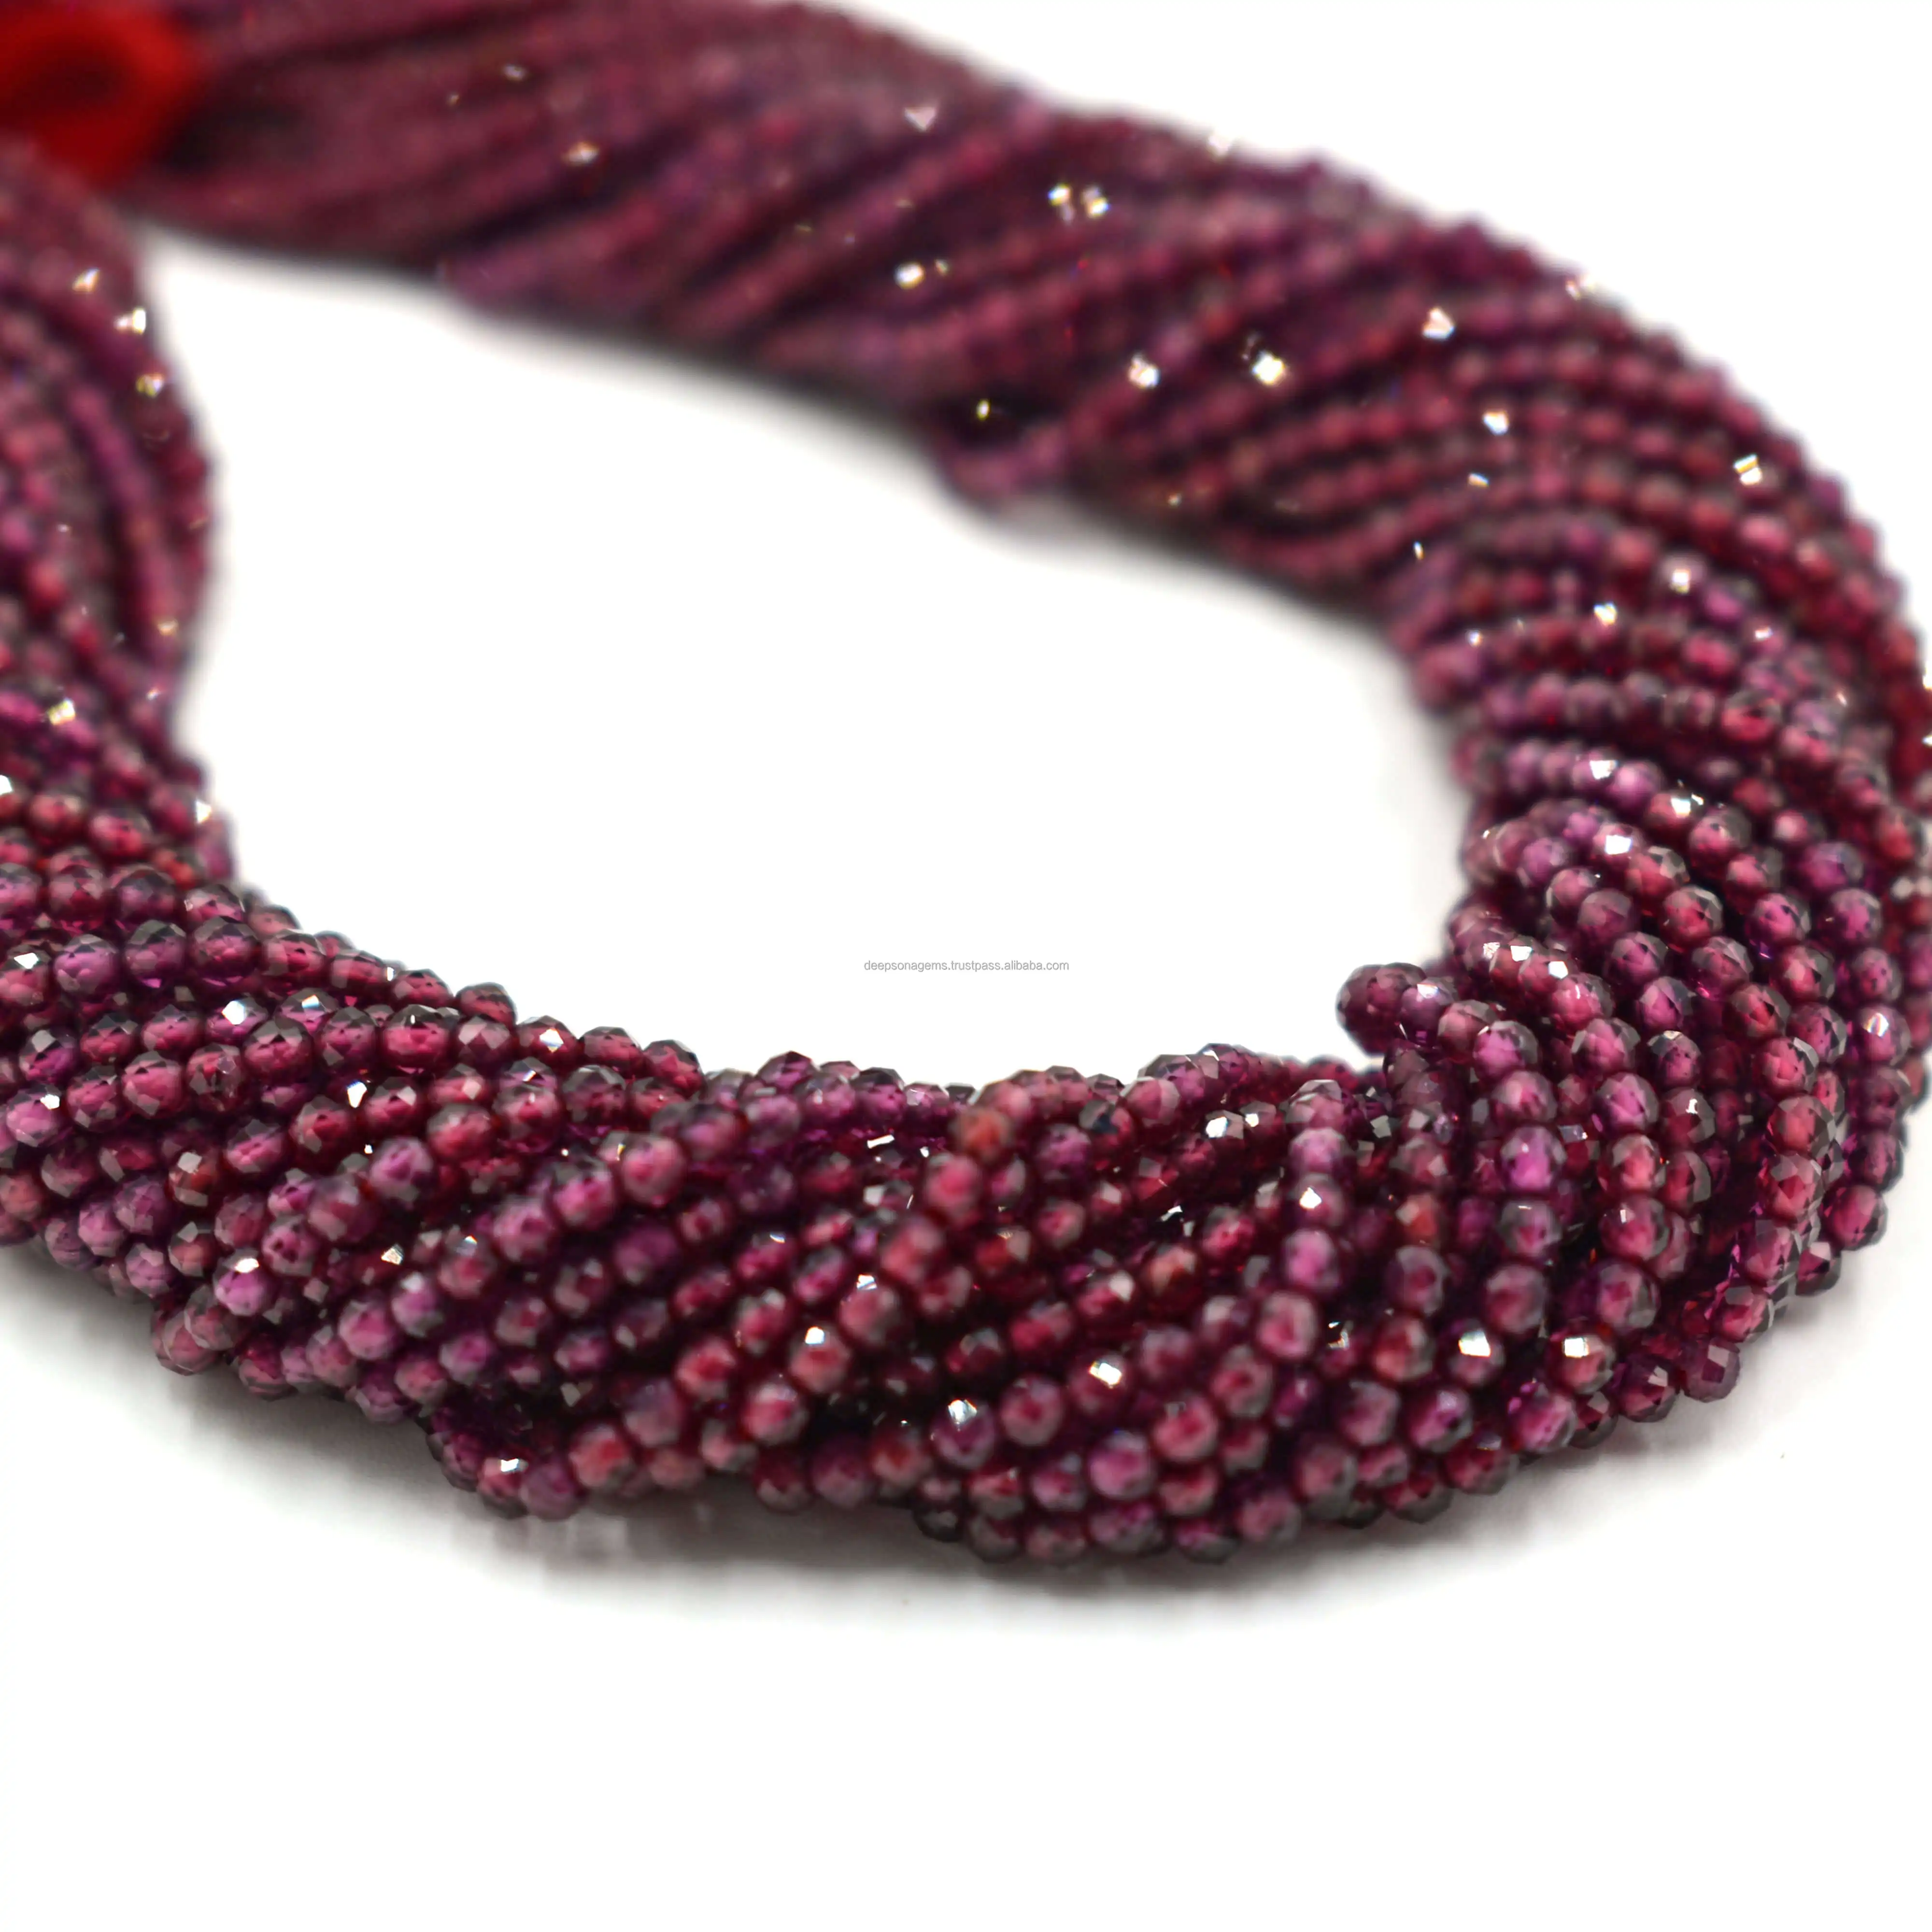 자연적인 2 mm 돌 구슬, DIY 목걸이를 위한 분홍색 석류석 면 처리 된 둥근 원석 물가, 고품질 원석 구슬